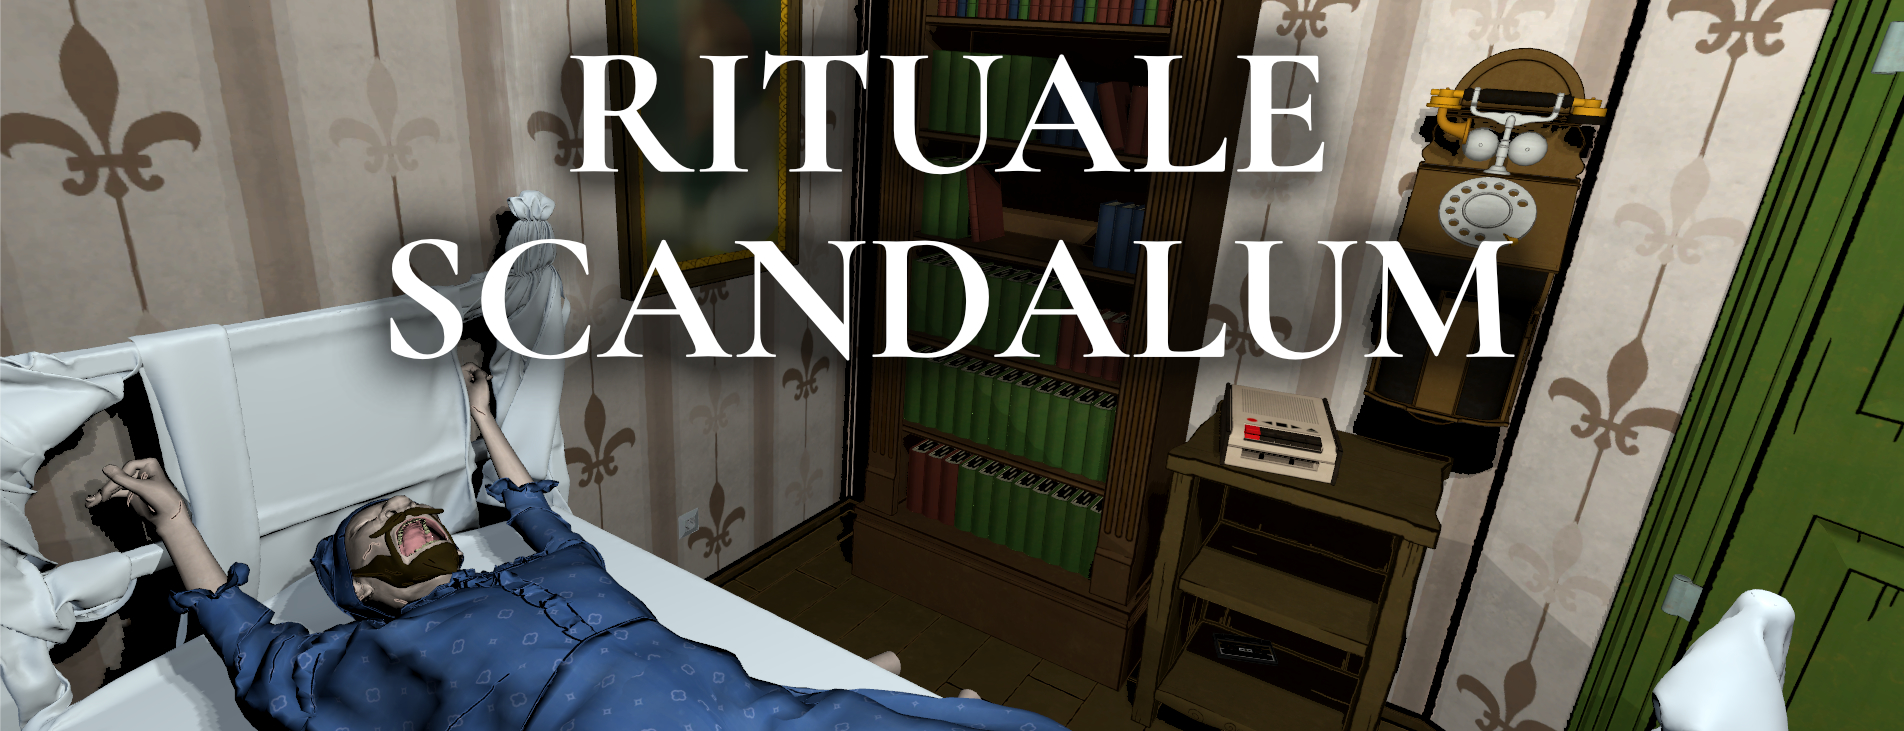 Rituale Scandalum VR | Demo (DE)